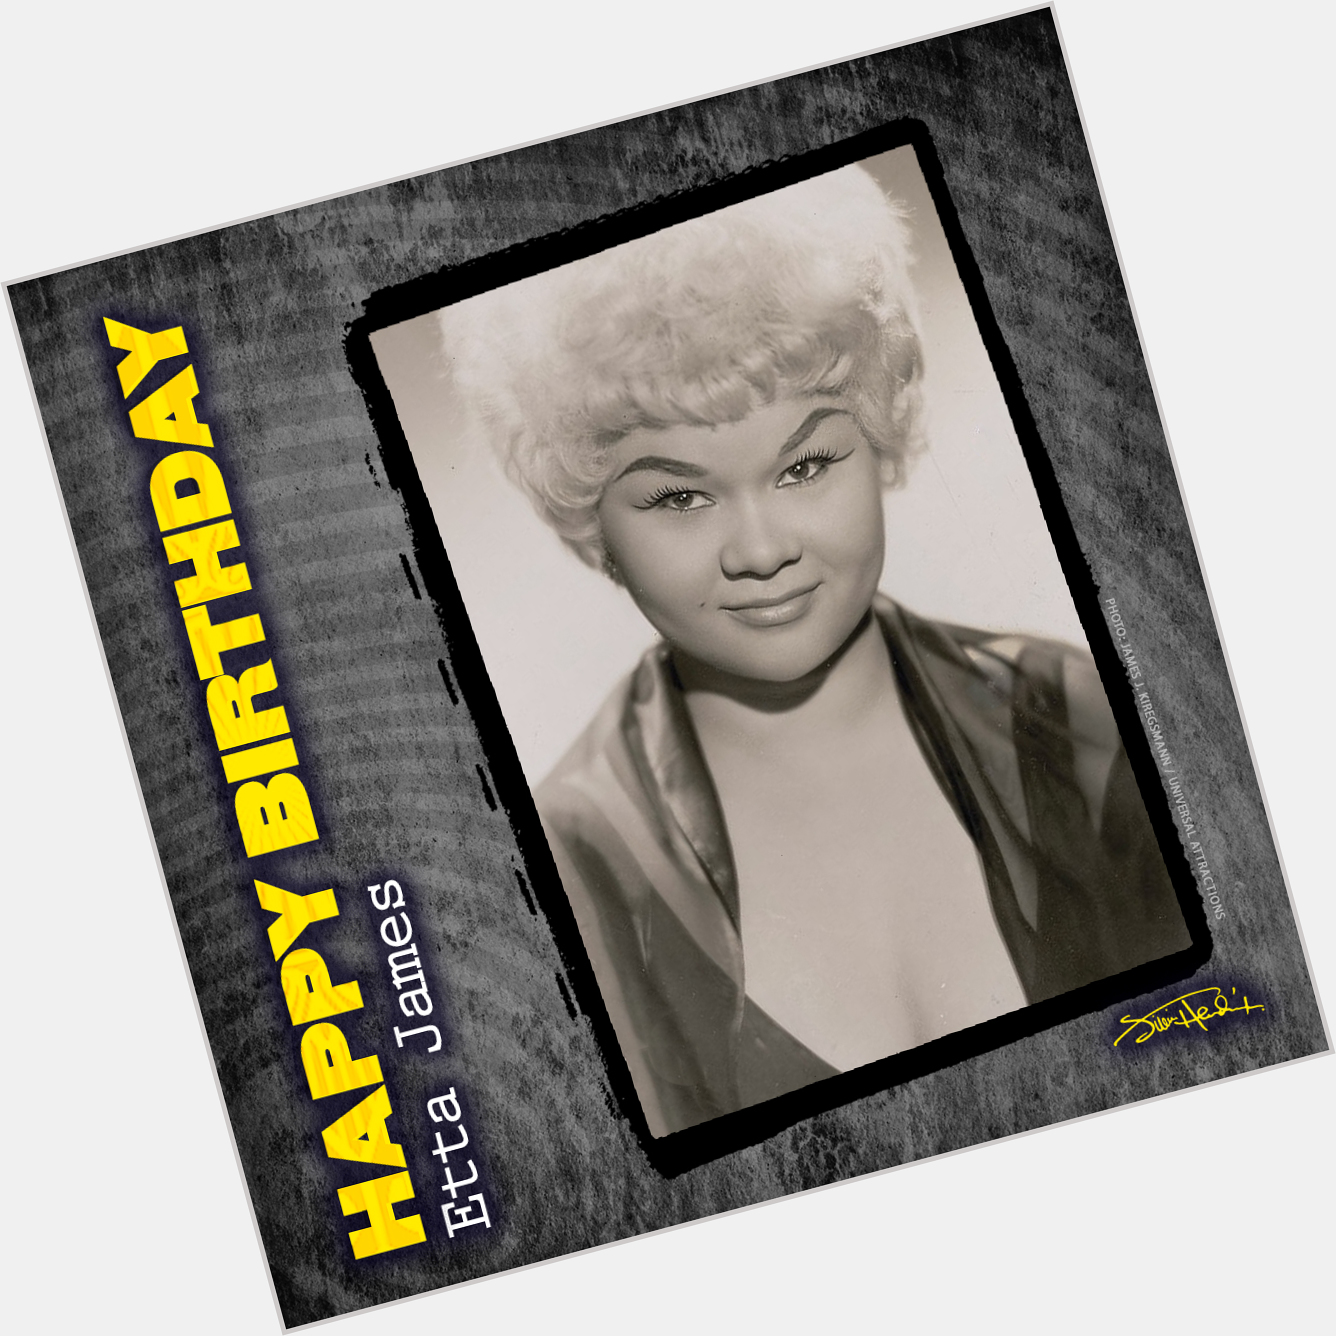 Happy Birthday to Etta James
January 25, 1938 - January 20, 2012  